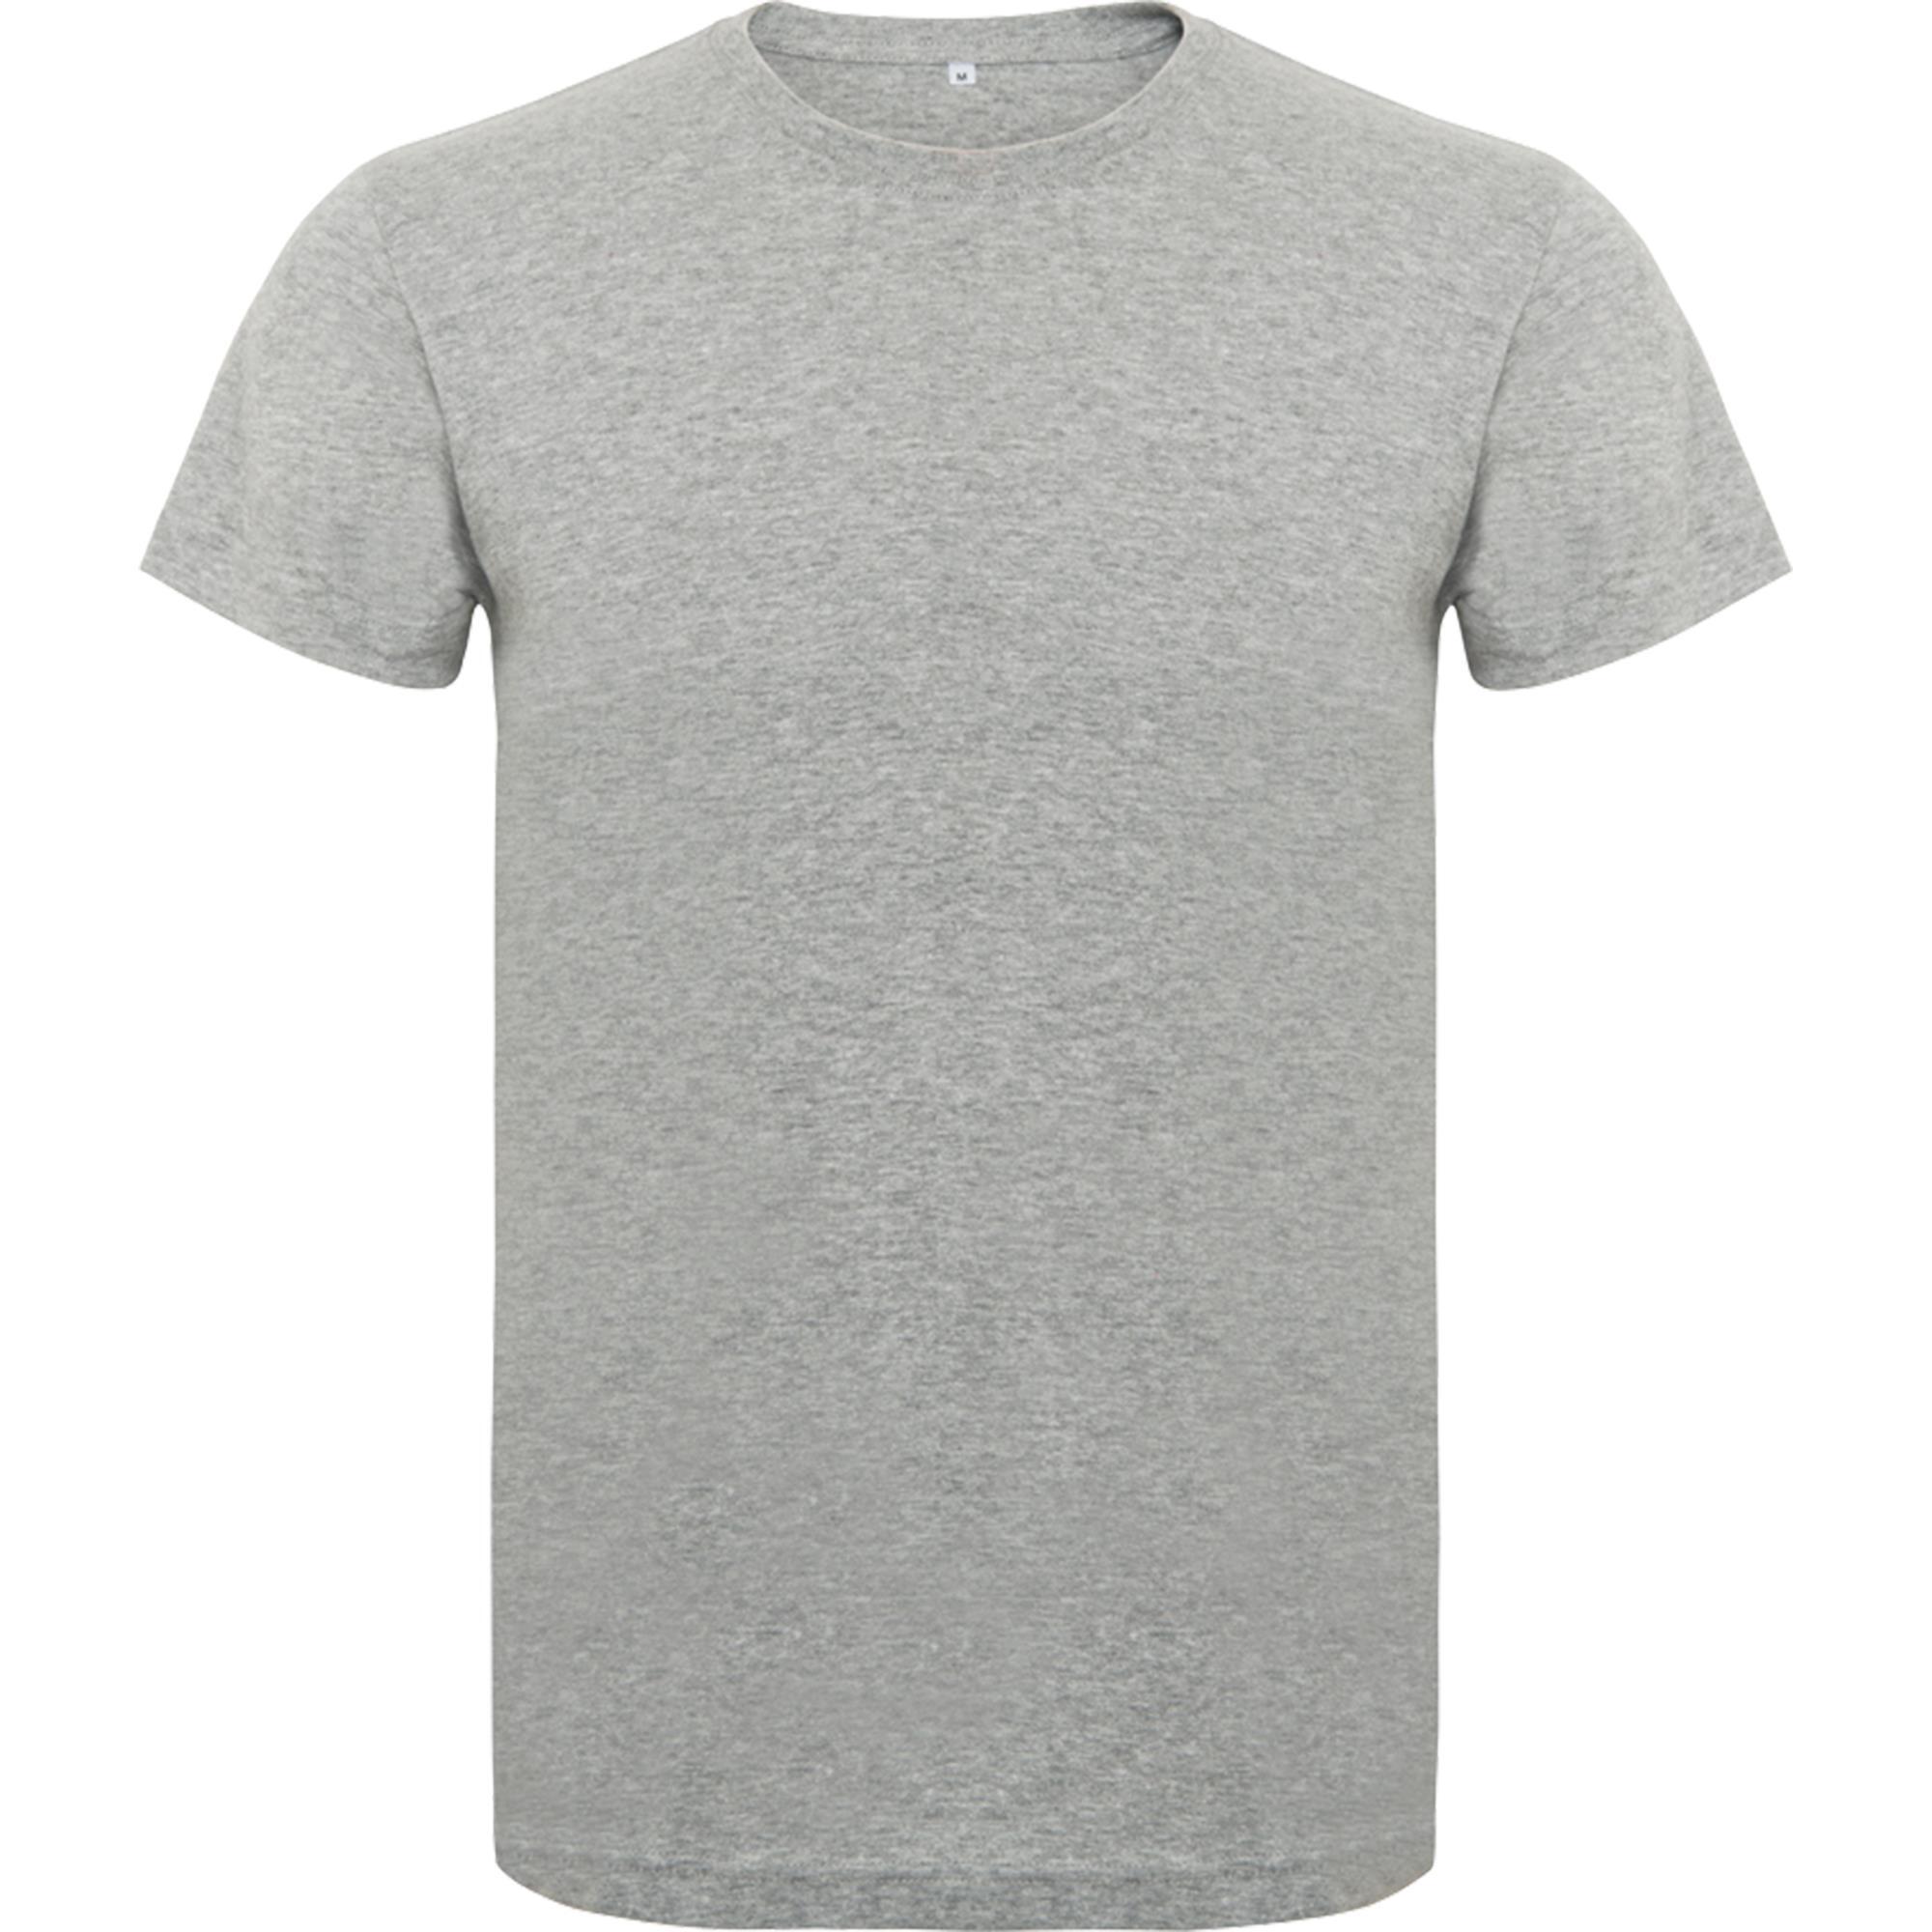 Rondgebreide T-shirt unisex voor volwassen grey personalisatie mogelijk